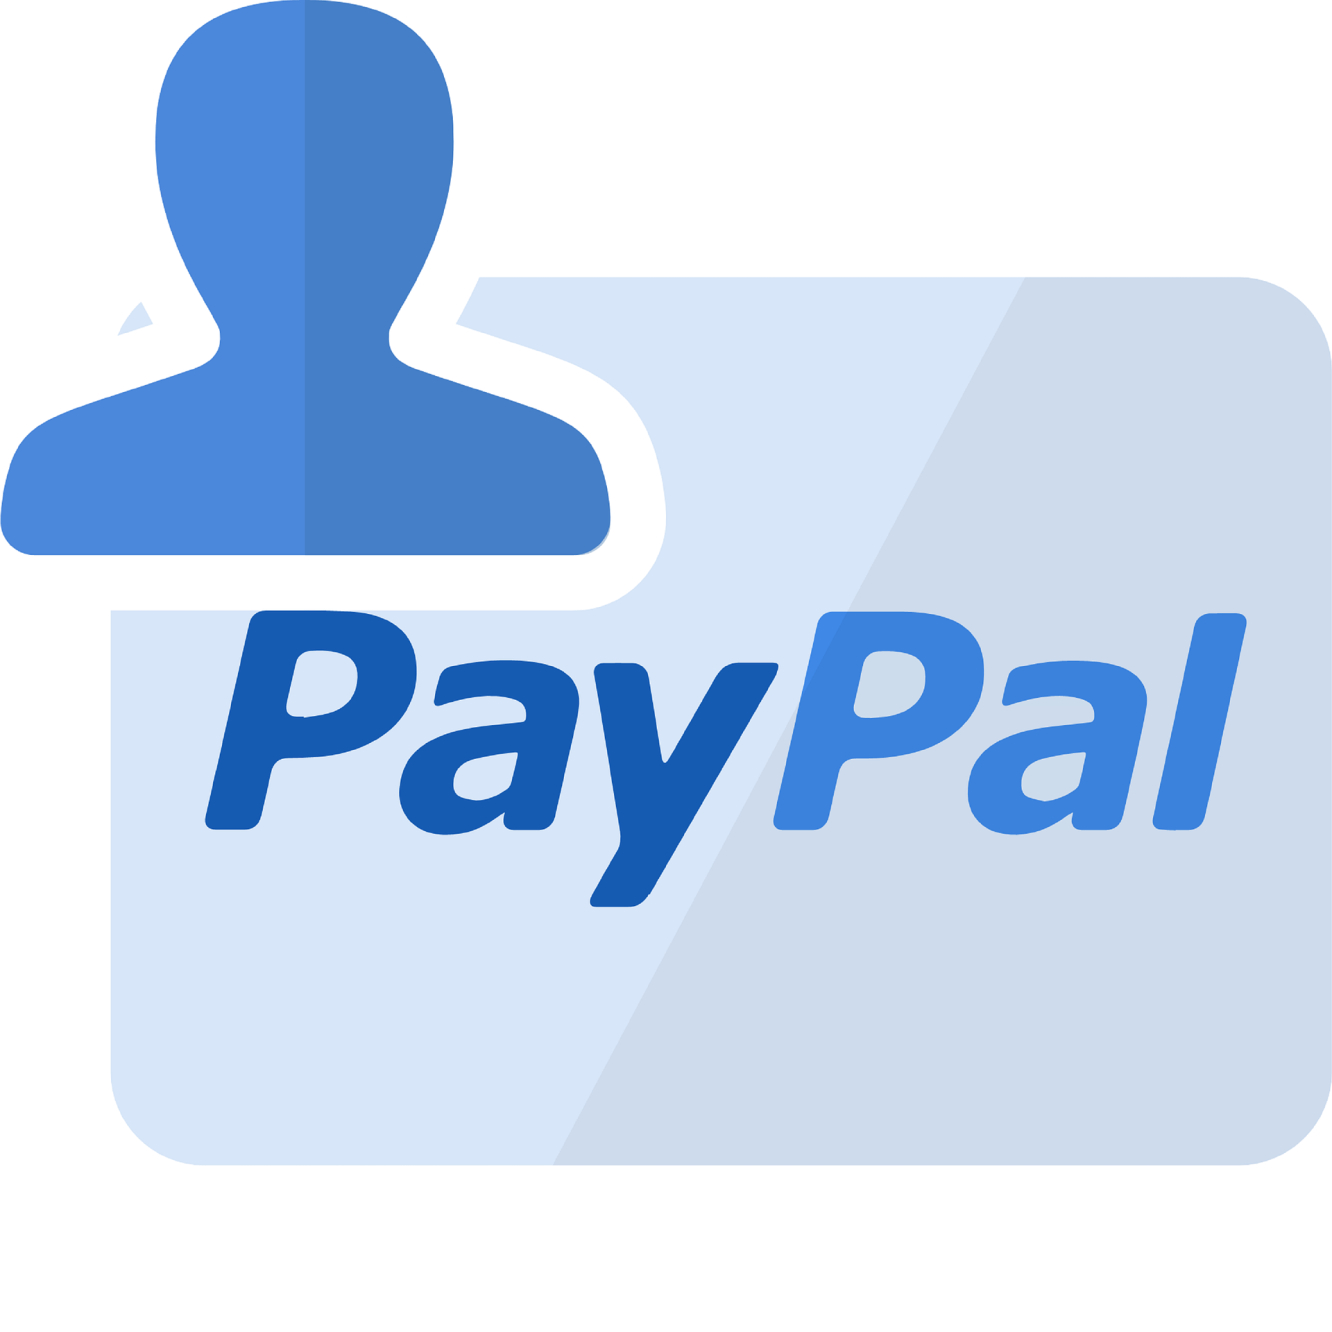 PayPal - Ist das Leiden jetzt endlich vorbei?